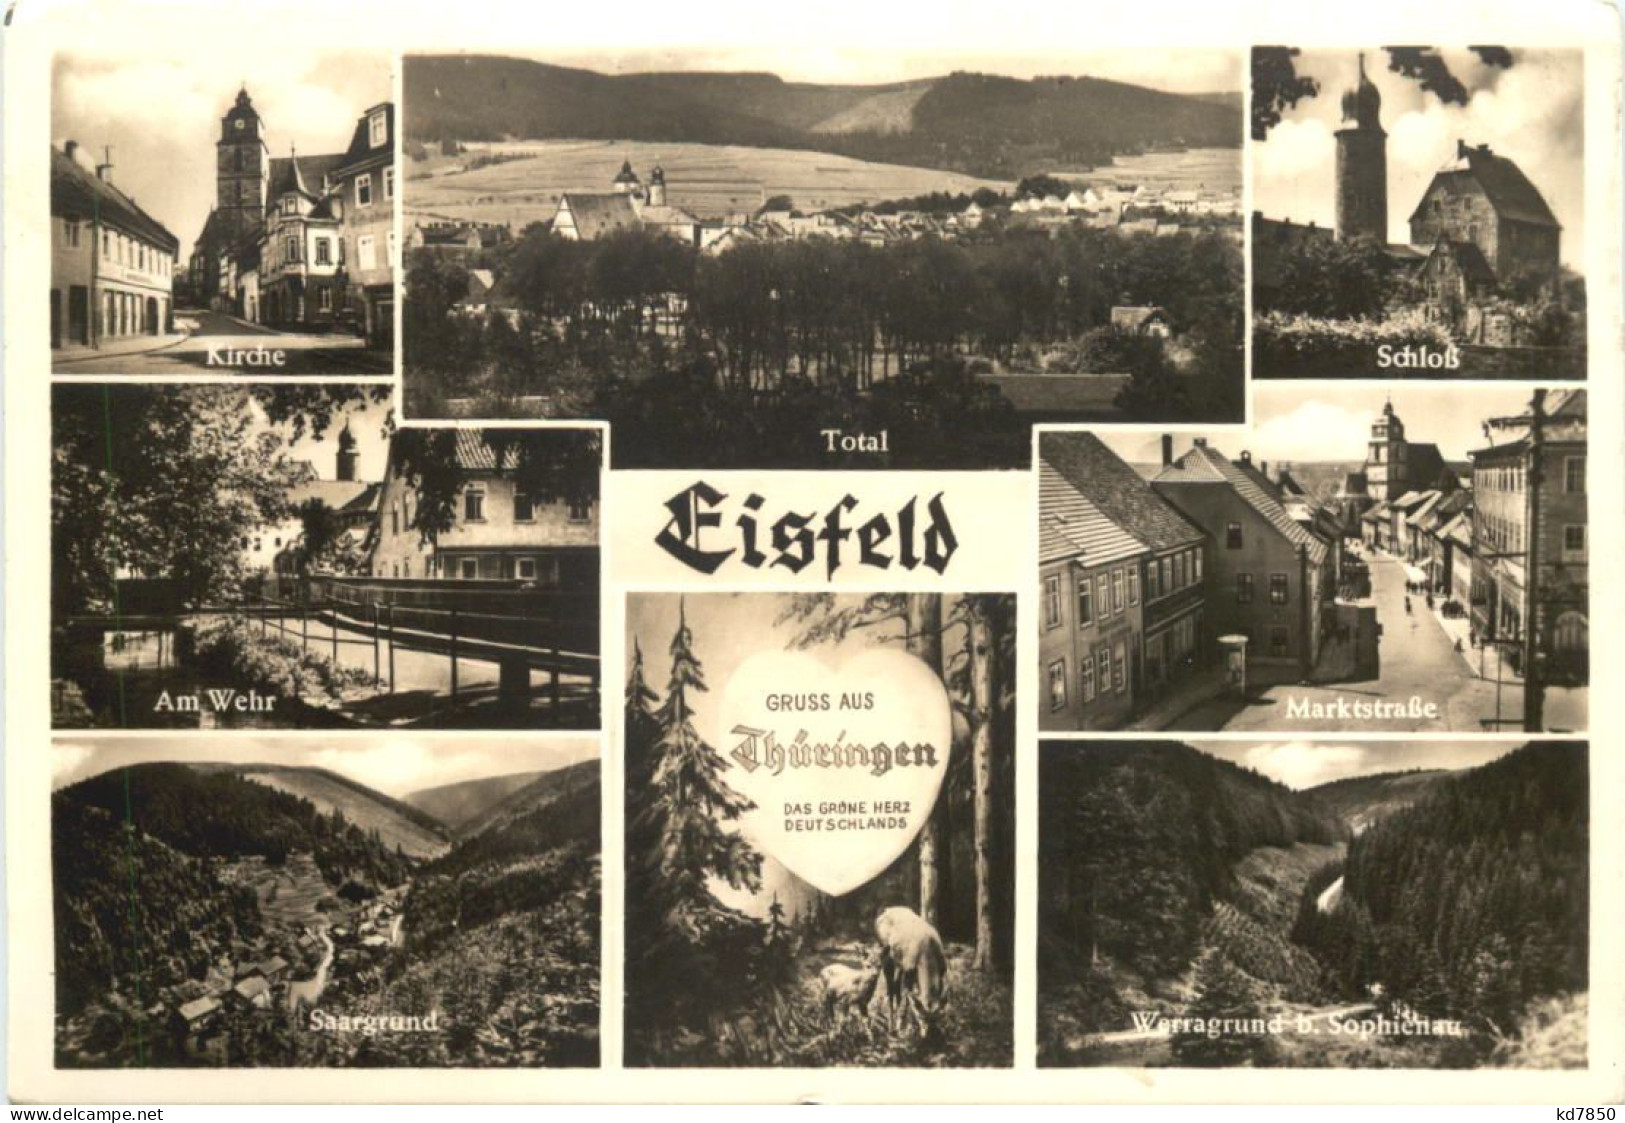 Eisfeld - Hildburghausen